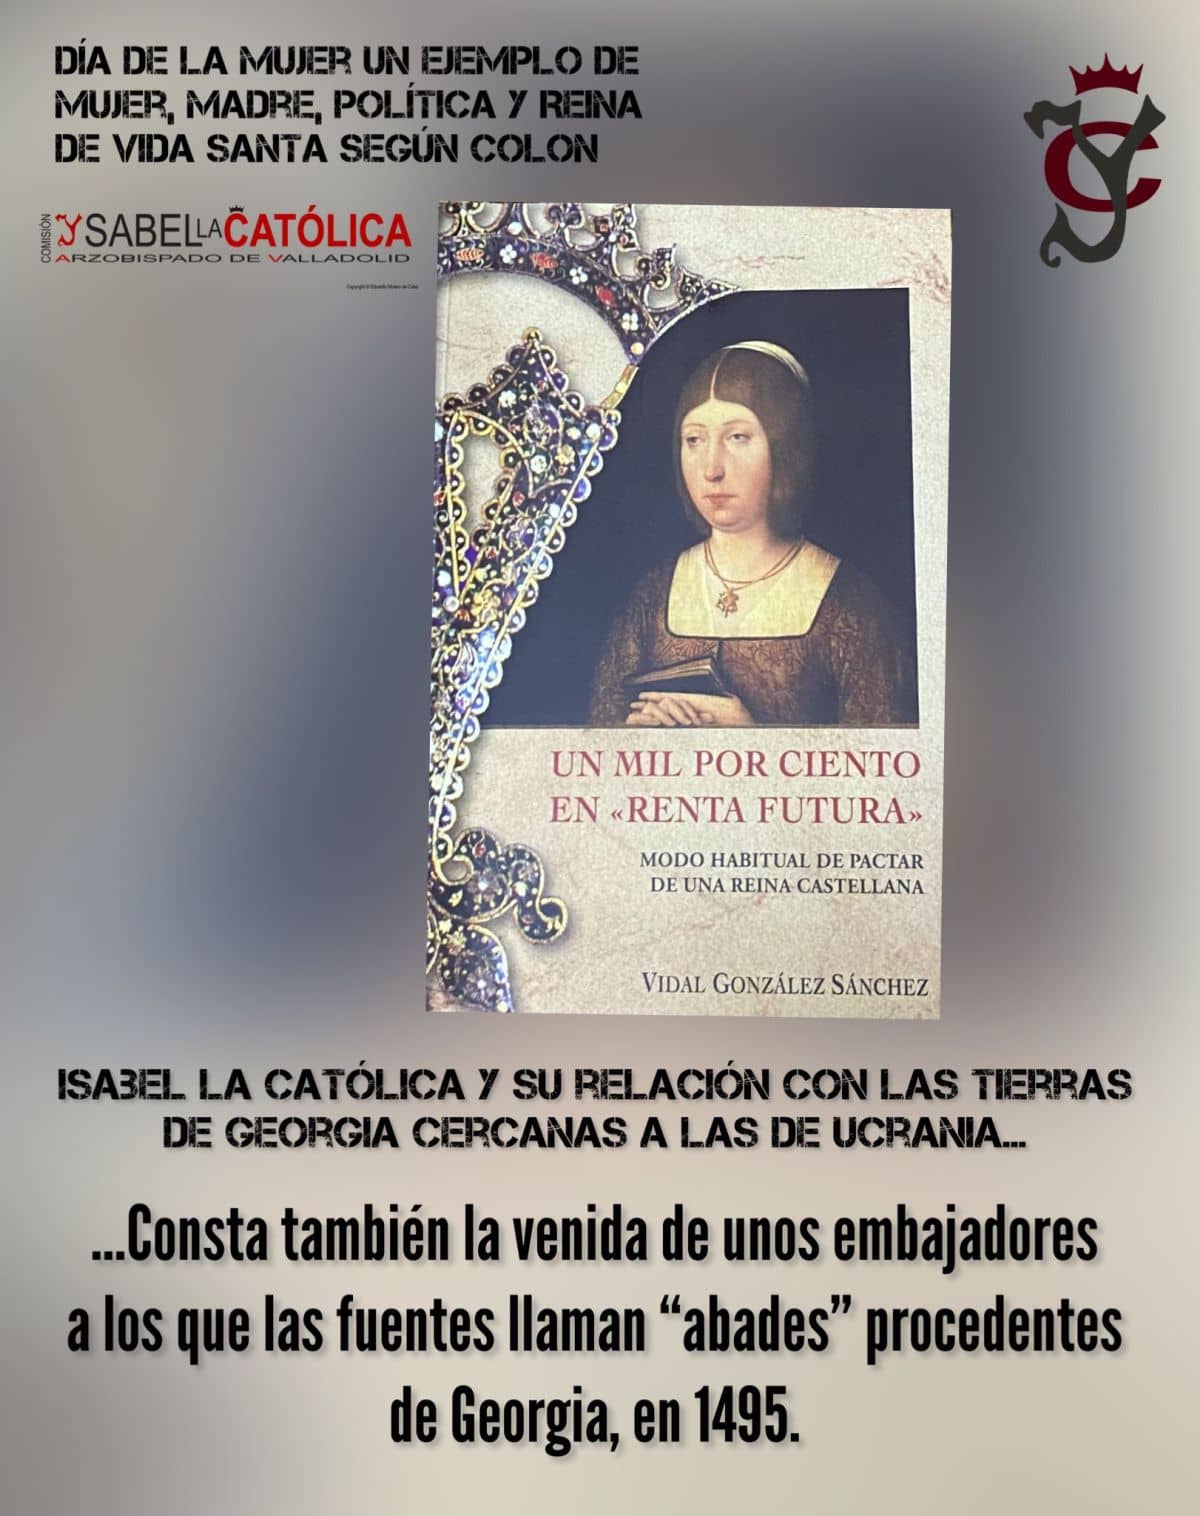 Isabel la Católica. 